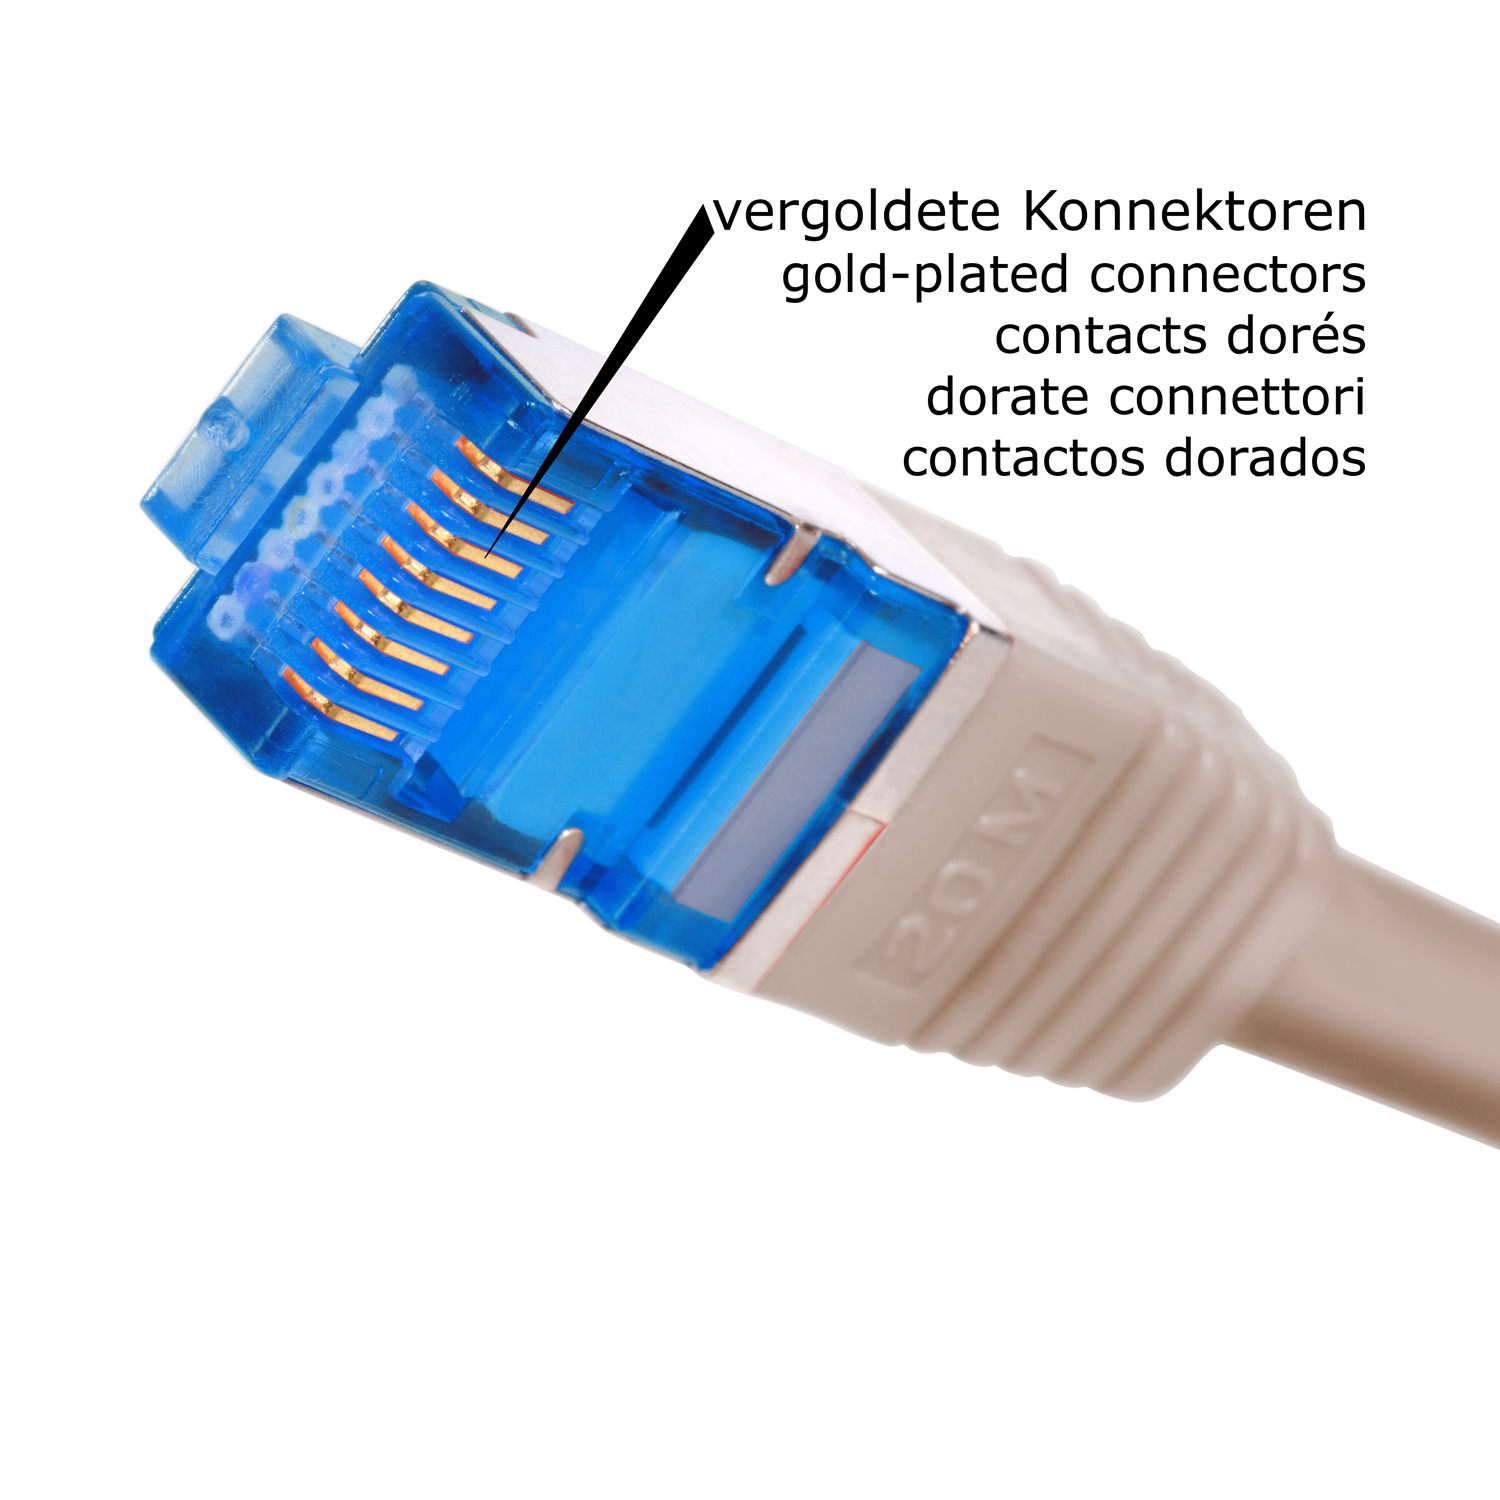 Netzwerkkabel, 30 m Netzwerkkabel / TPFNET Patchkabel grau, S/FTP 30m 10GBit,